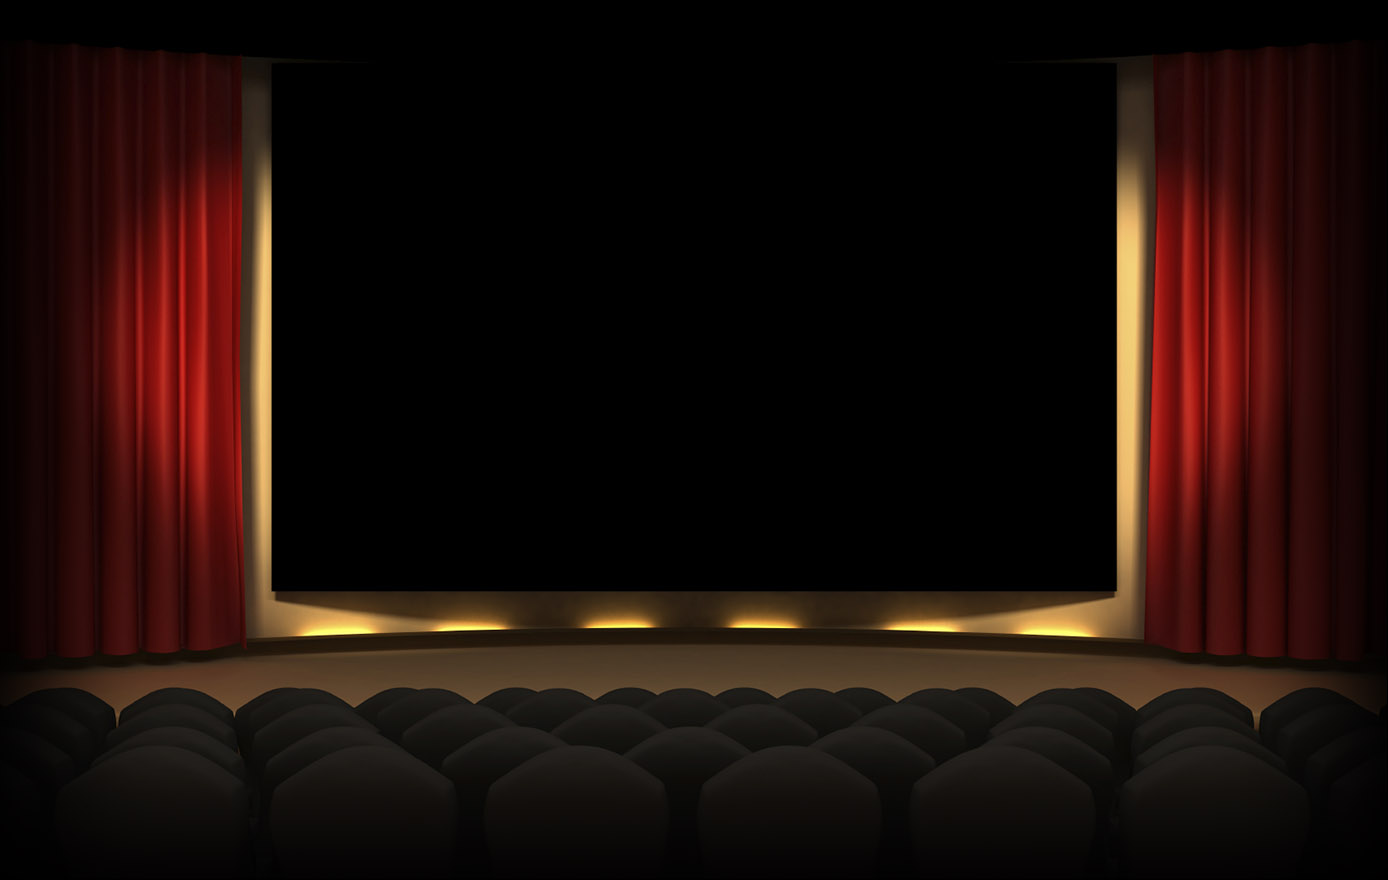 Movie Theater Background For Videos Slideshows Av Shows